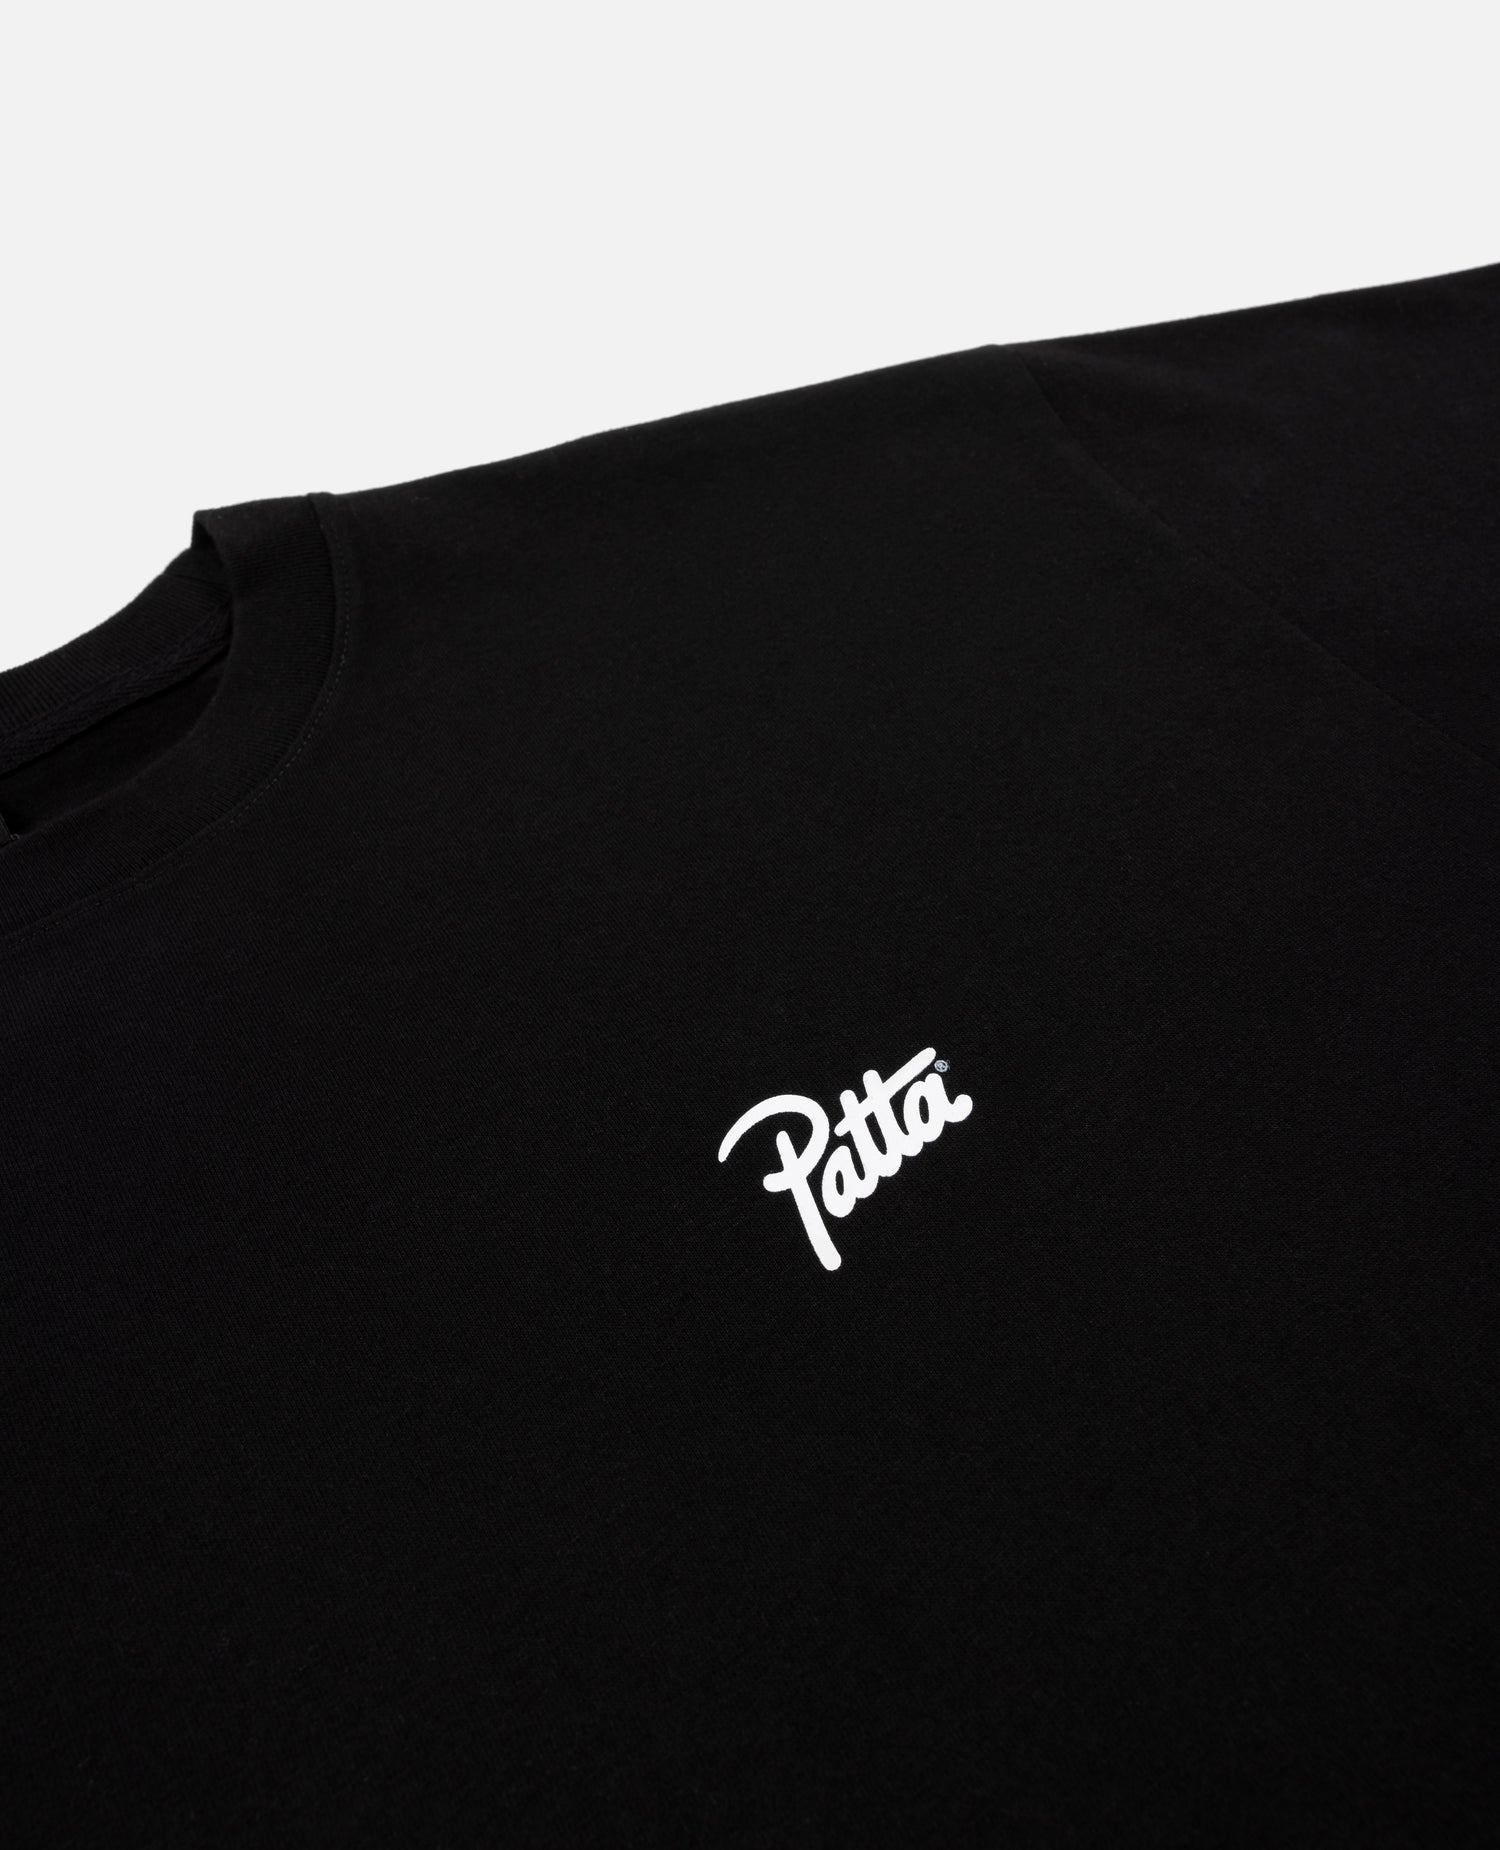 T-shirt clé Patta (noir)